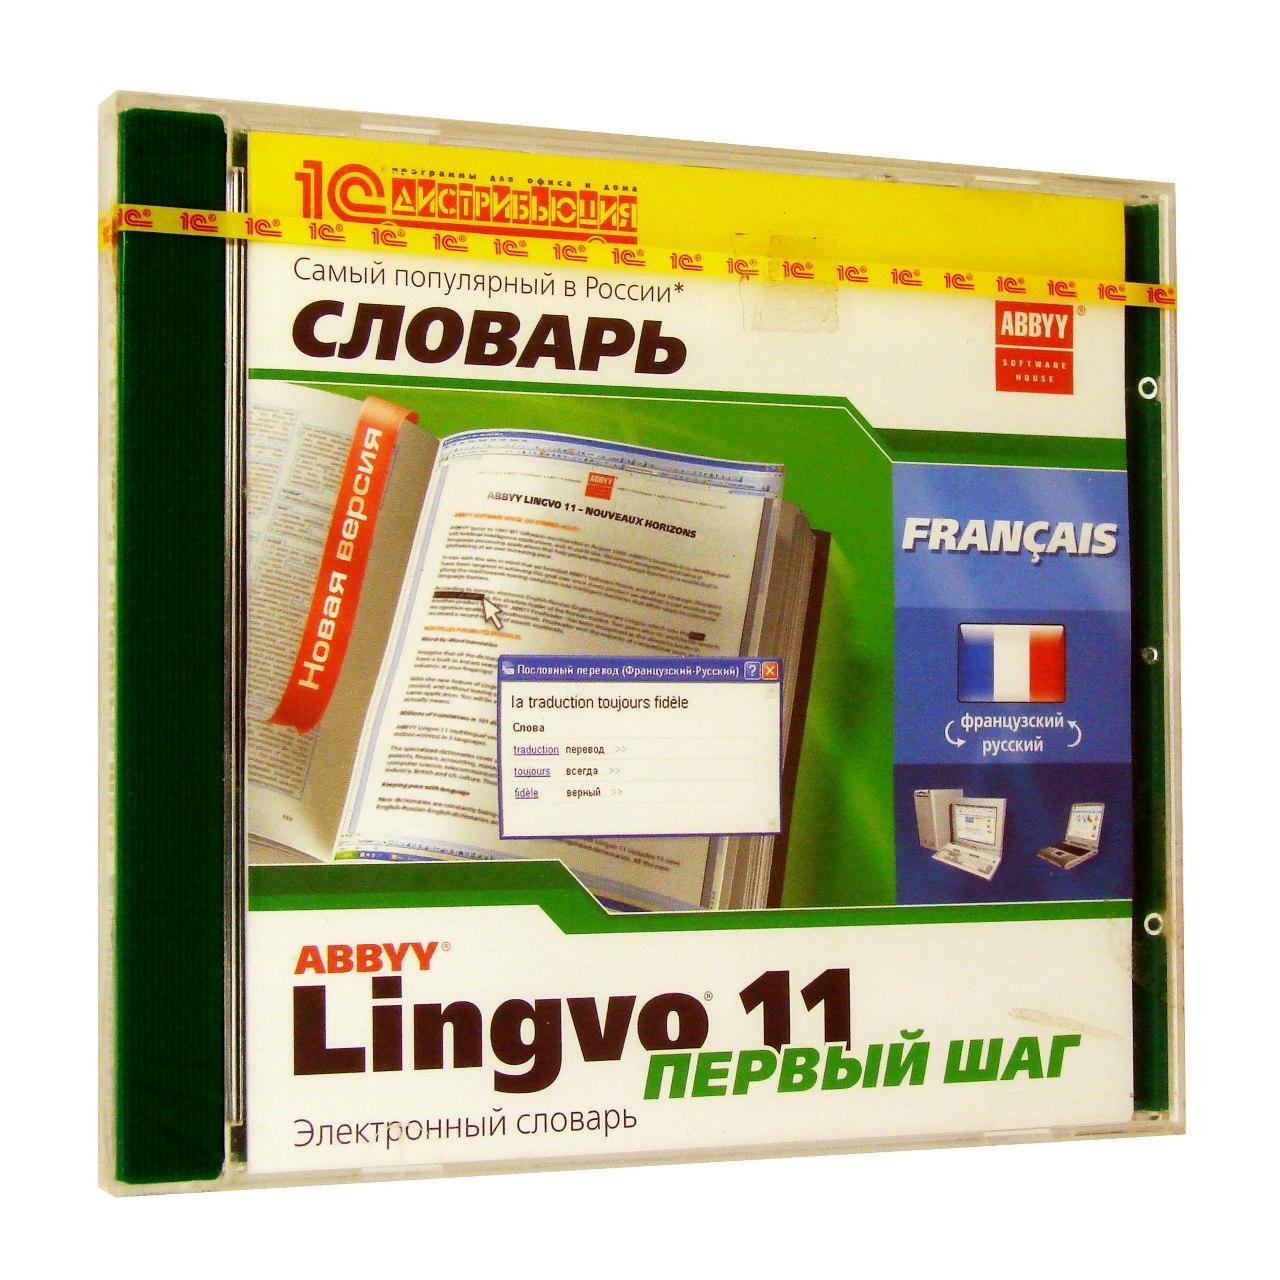 Компьютерный компакт-диск ABBYY Lingvo 11 Первый Шаг Fr-Rus-Fr (PC), фирма "1С", 1CD